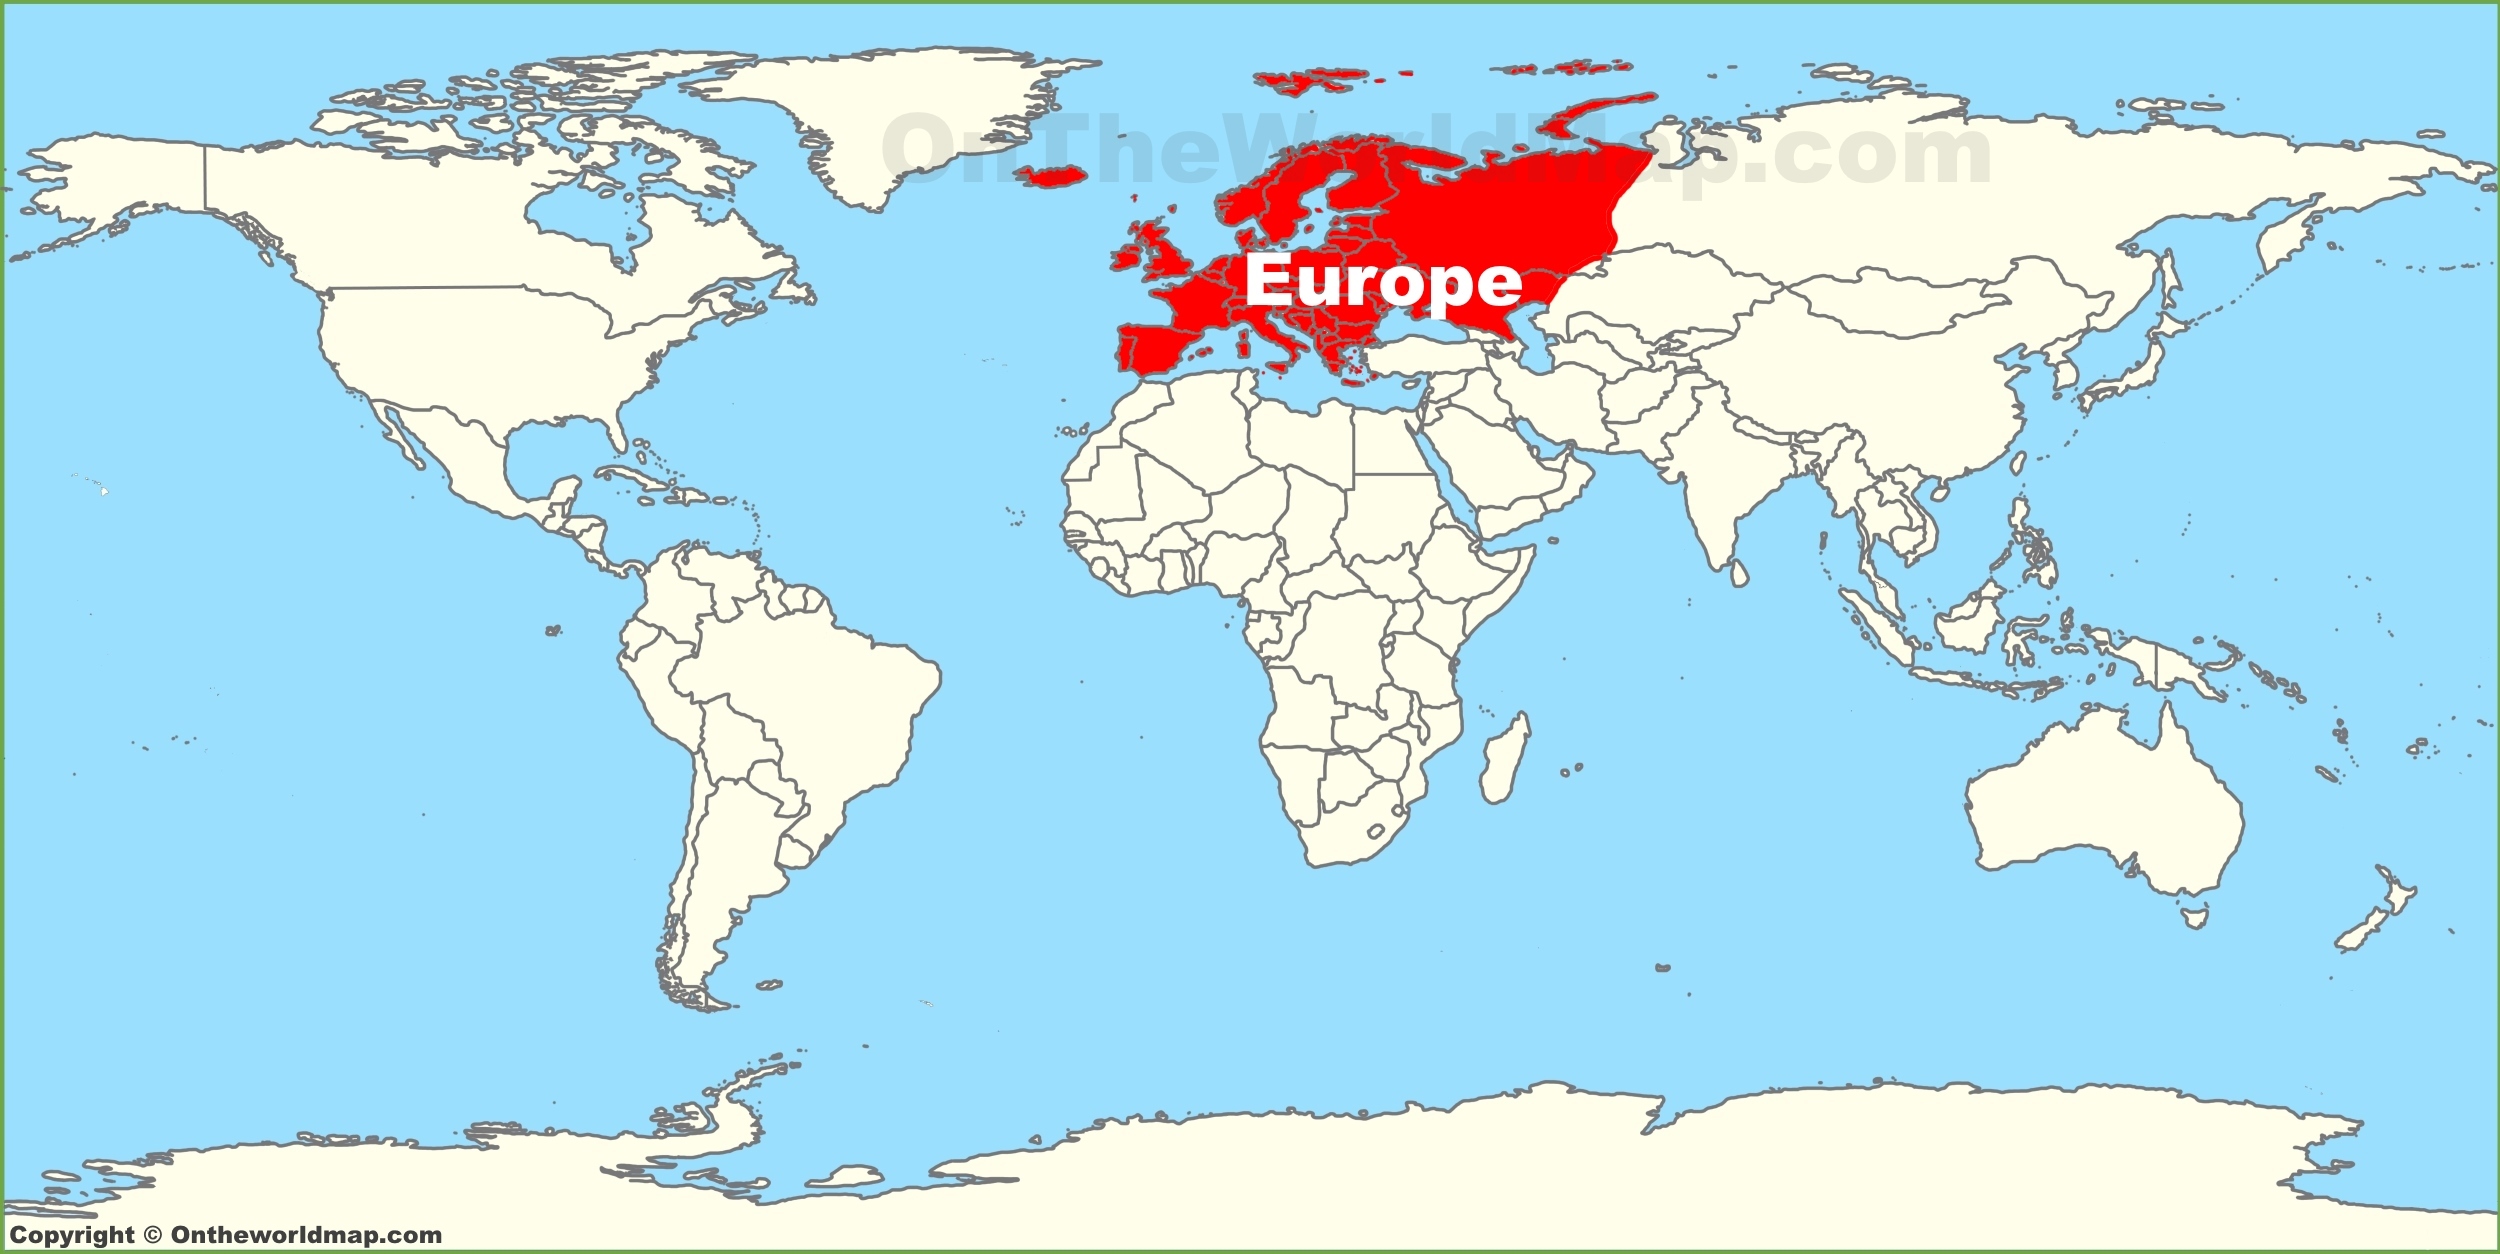 Europe On World Map - United States Map